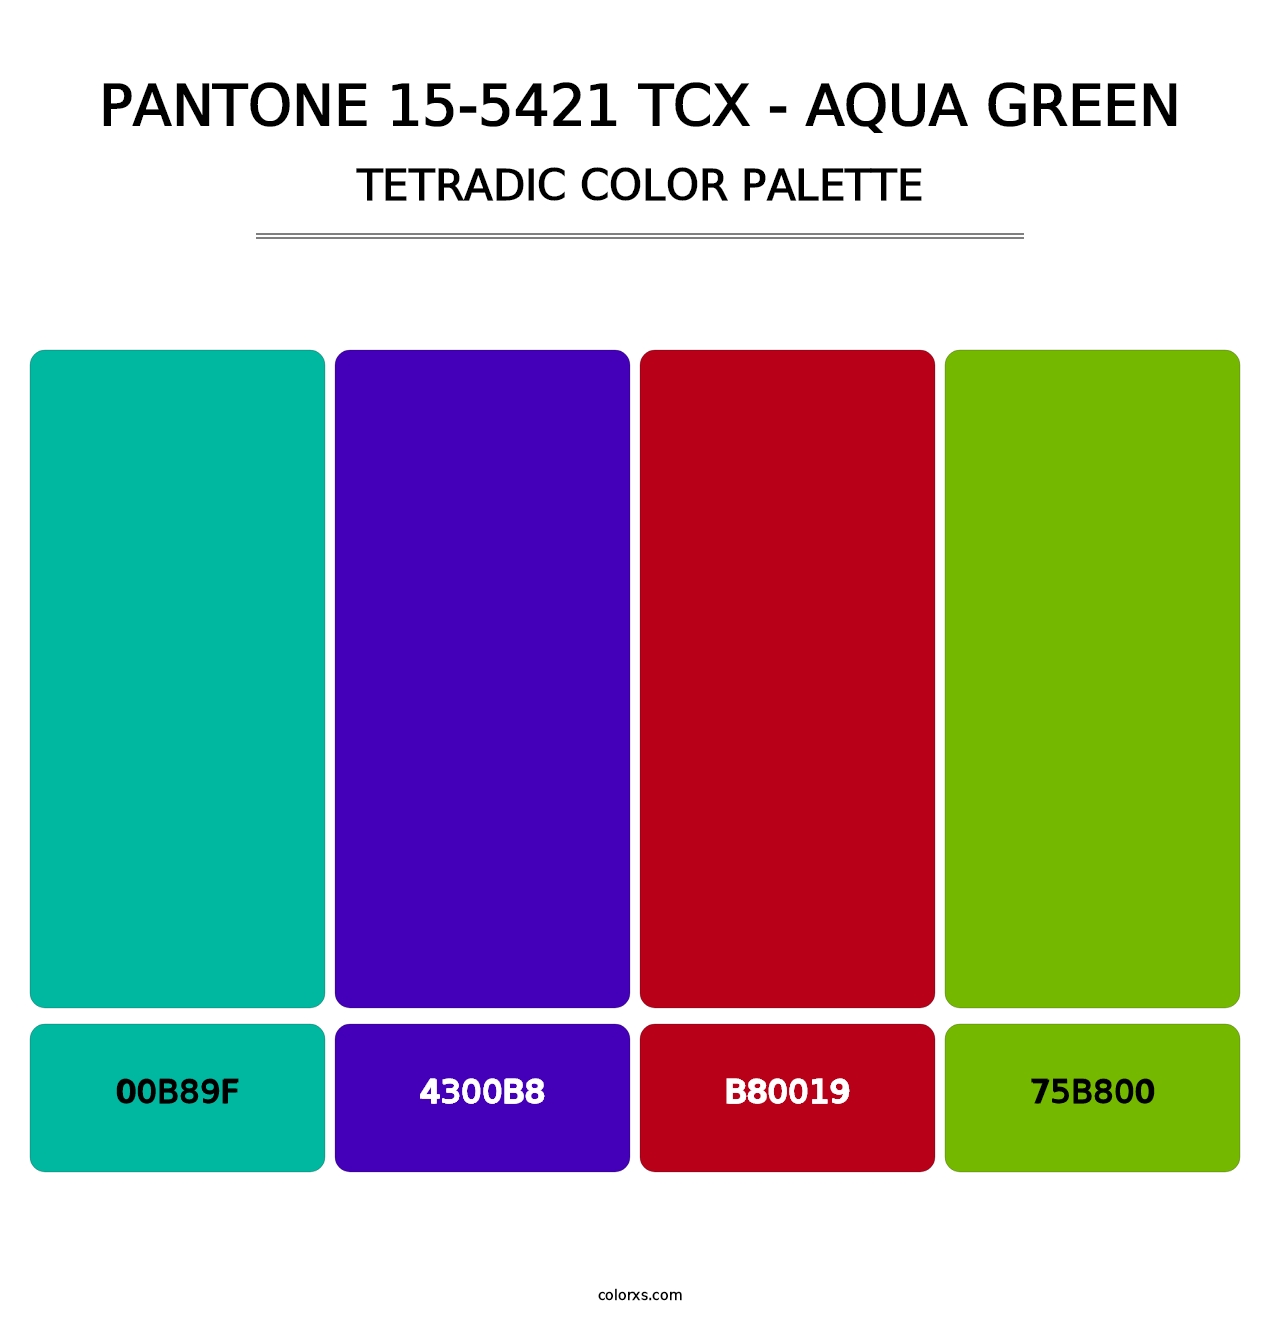 PANTONE 15-5421 TCX - Aqua Green - Tetradic Color Palette